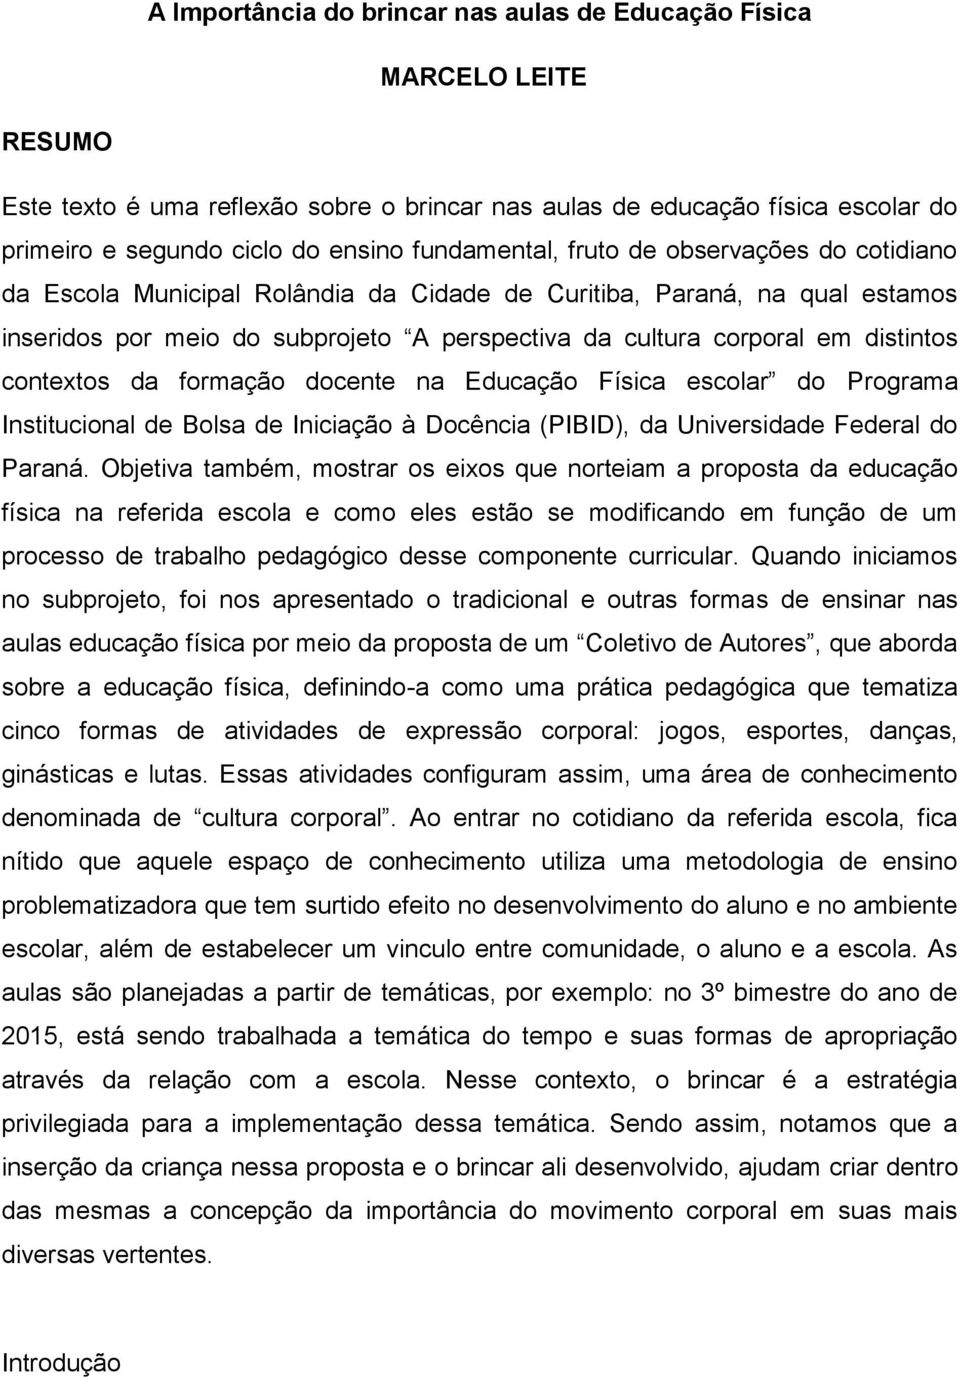 distintos contextos da formação docente na Educação Física escolar do Programa Institucional de Bolsa de Iniciação à Docência (PIBID), da Universidade Federal do Paraná.